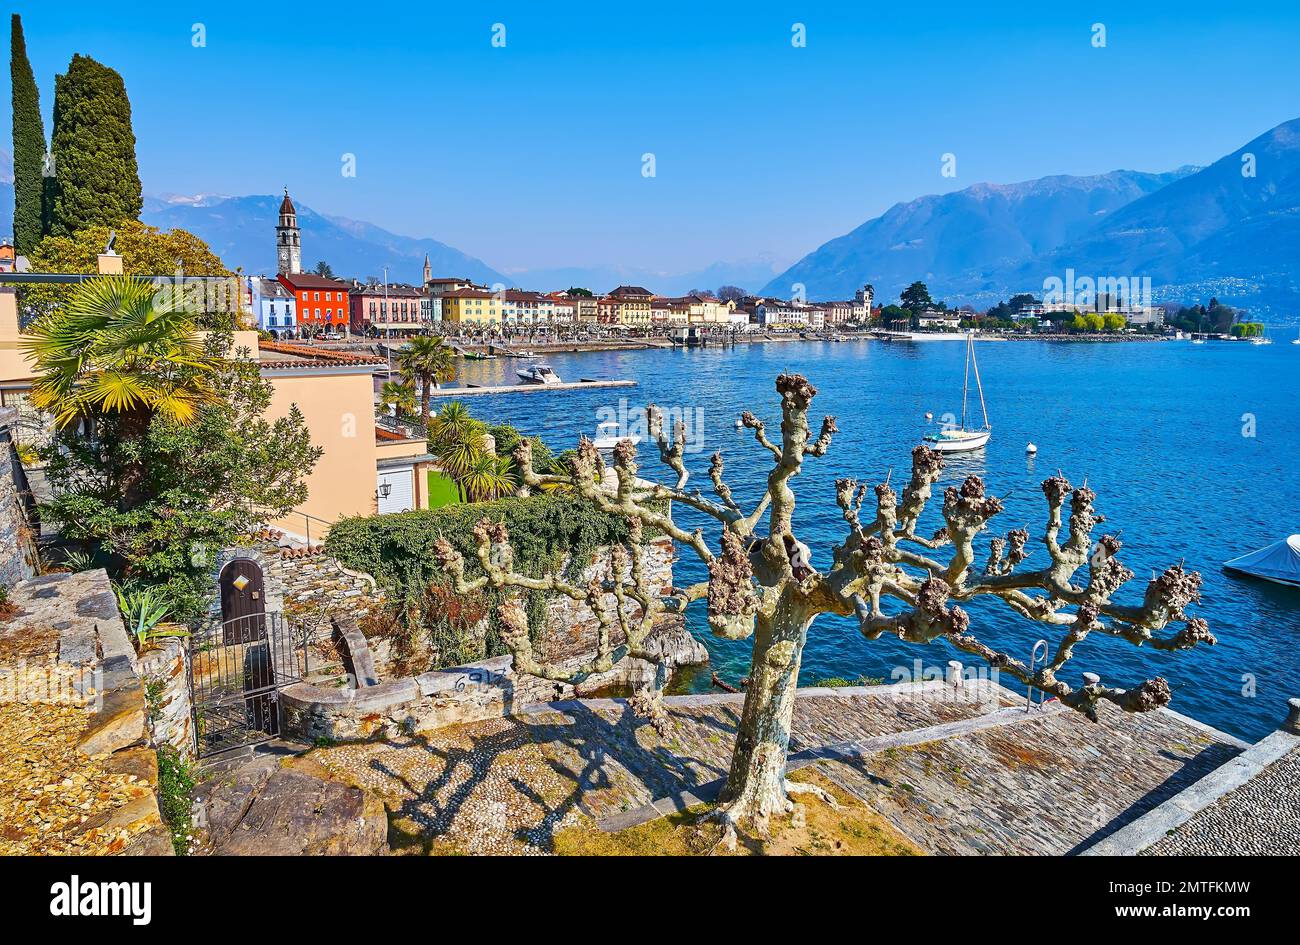 La vista del lago de Ascona con el árbol viejo en la orilla, línea de casas de colores en el casco antiguo y los Alpes brumosos en el fondo, Suiza Foto de stock